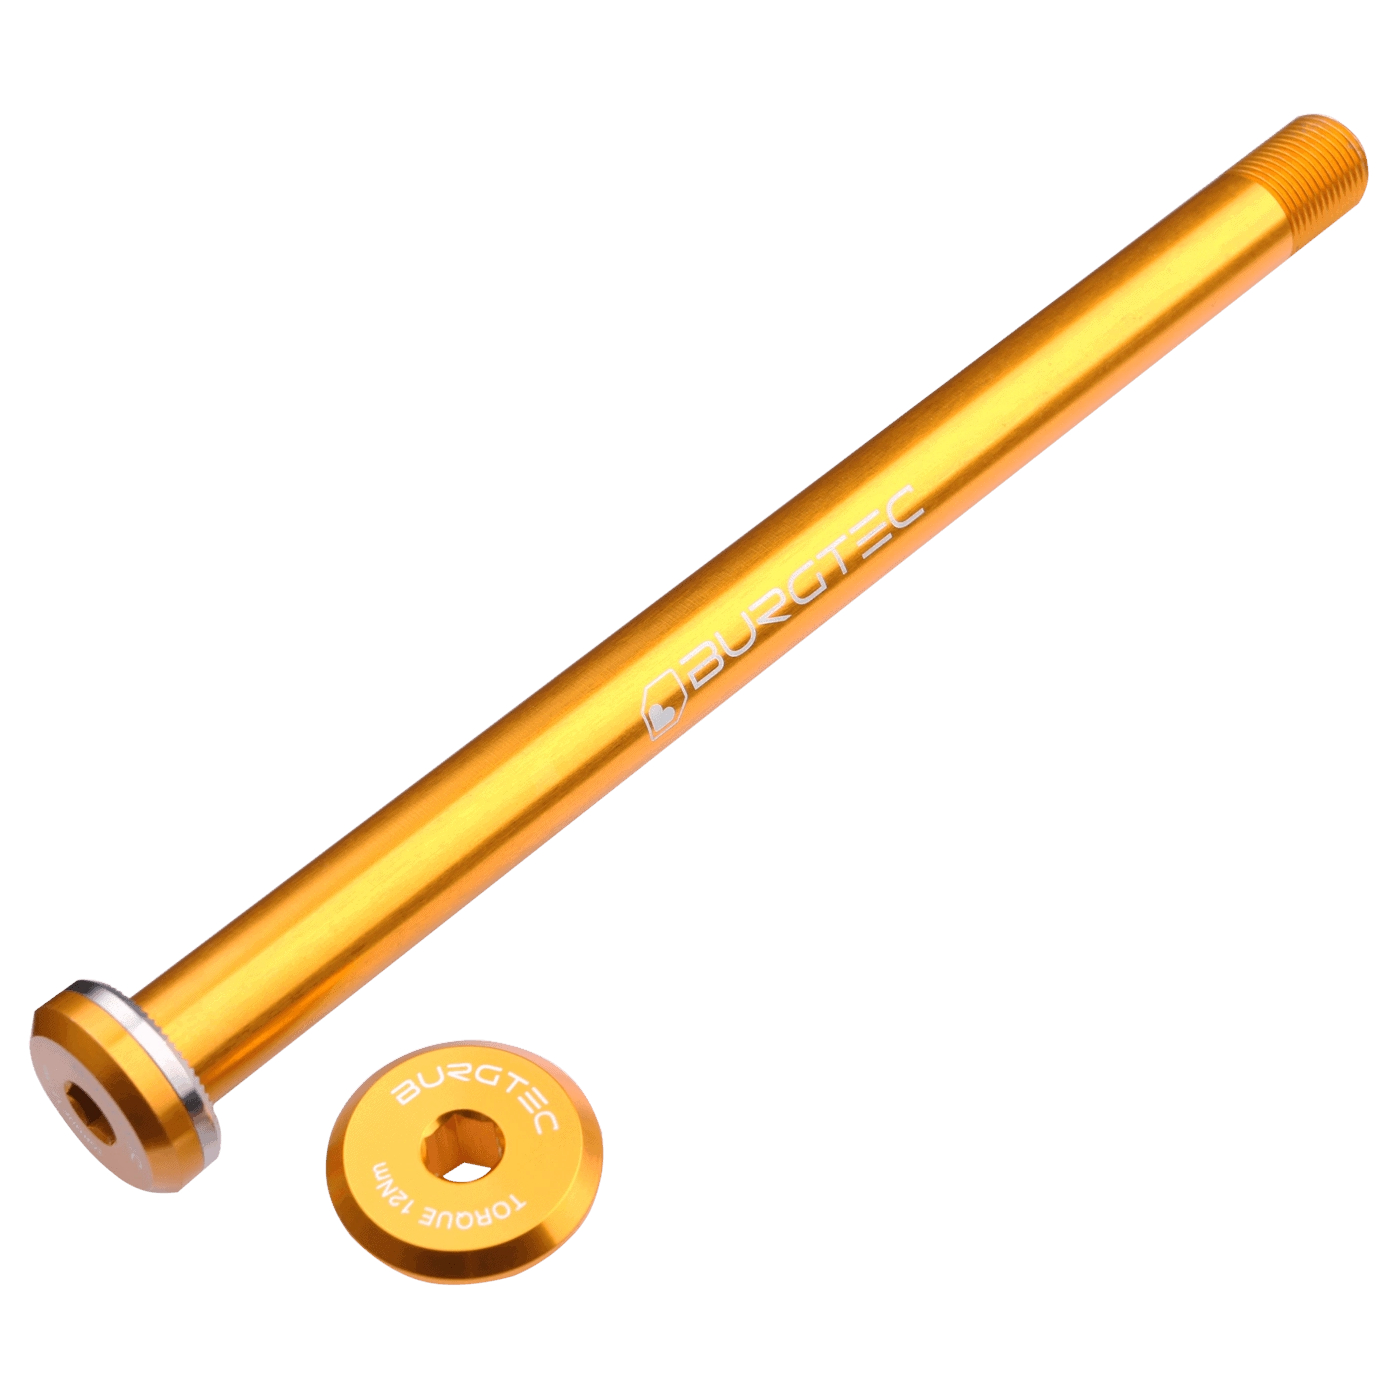 Produktbild von Burgtec Steckachse - 12x148mm Boost - für Santa Cruz Ausfallenden / 168,5mm - Burgtec Bullion Gold